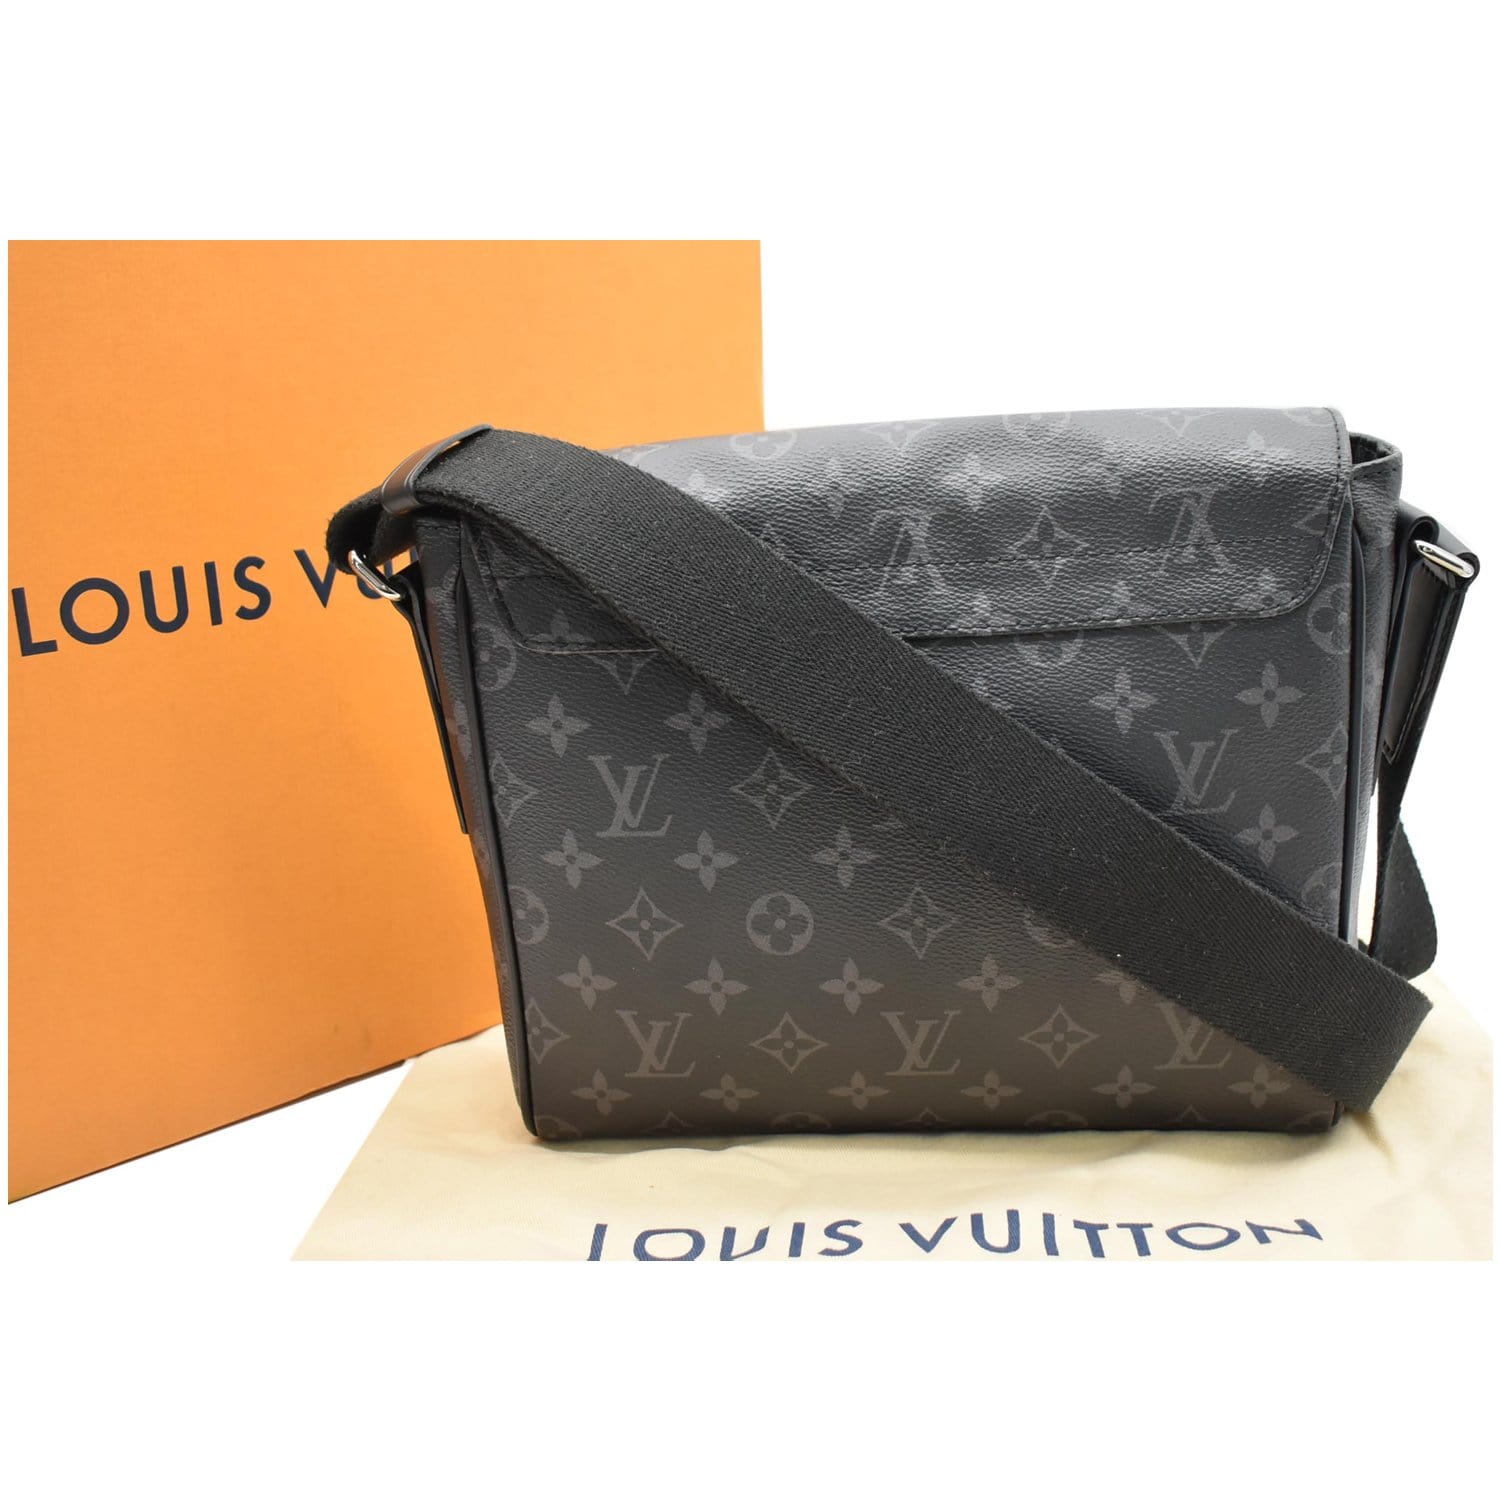 Các kích thước Size Chart của túi xách Louis Vuitton Neverfull   Centimetvn